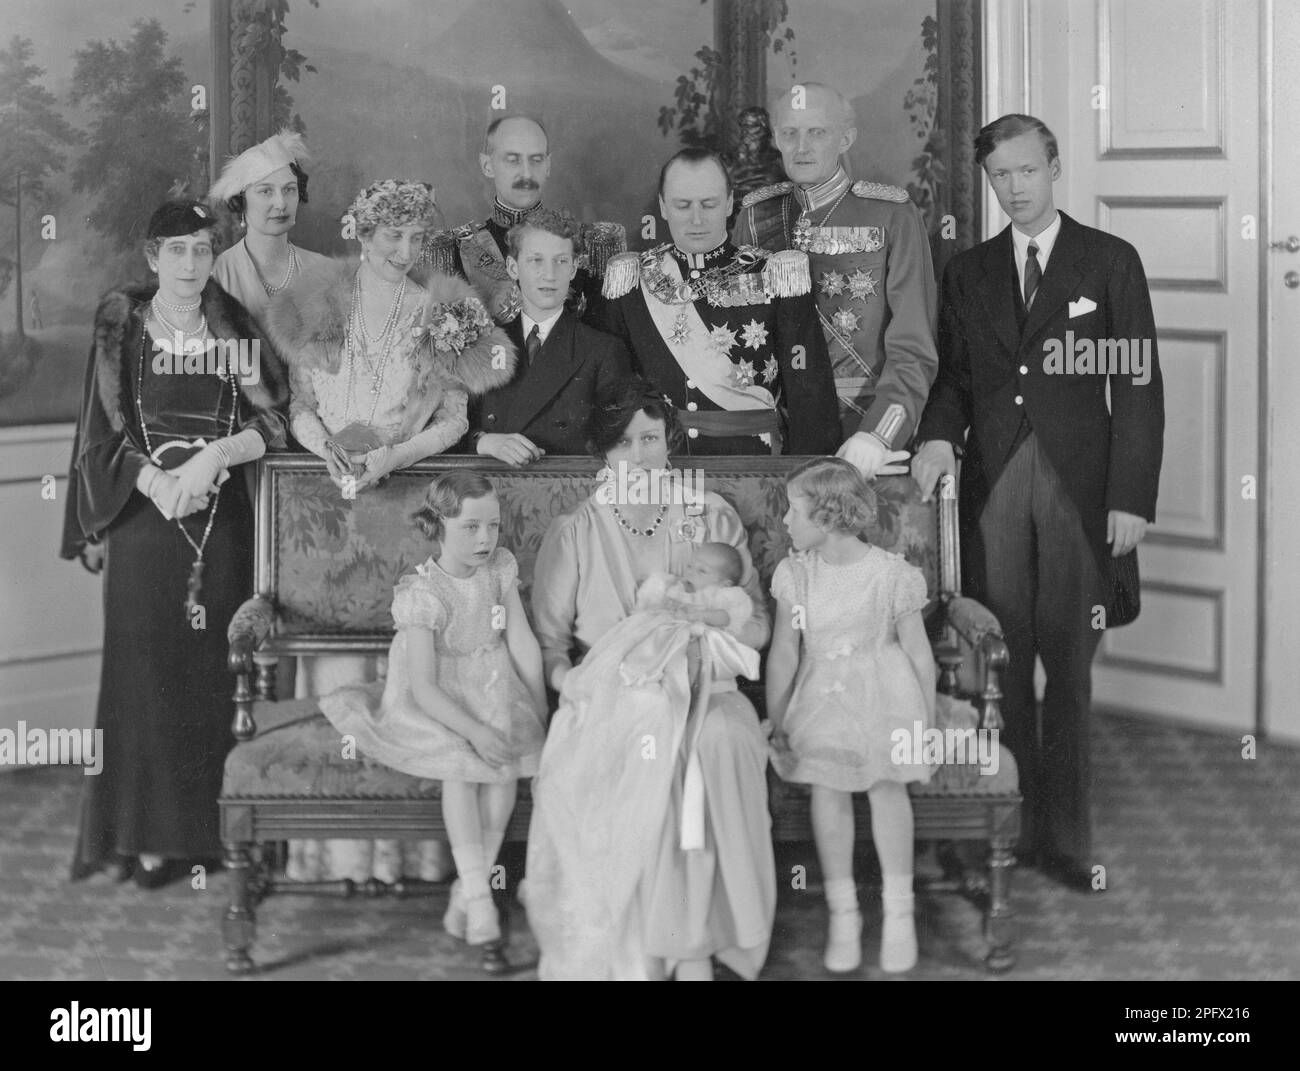 Märtha de Noruega, 1901-1954, princesa sueca y princesa de la corona de Noruega. Hija del príncipe Carl de Suecia. Se casó en 1929 con el príncipe heredero Olav, más tarde rey Olav V de Noruega. Aquí con el recién nacido príncipe heredero Harald de Noruega e hijas Ragnhild y Astrid. Detrás de la princesa heredera Märtha se encuentra su esposo, el príncipe heredero Olav. A su derecha están el padre de Märtha, el príncipe Carl y su hijo menor, el príncipe Carl. Tercero de la izquierda, la madre de Märtha, la princesa Ingeborg y su hermana la princesa Margaretha. El año es 1937 Foto de stock